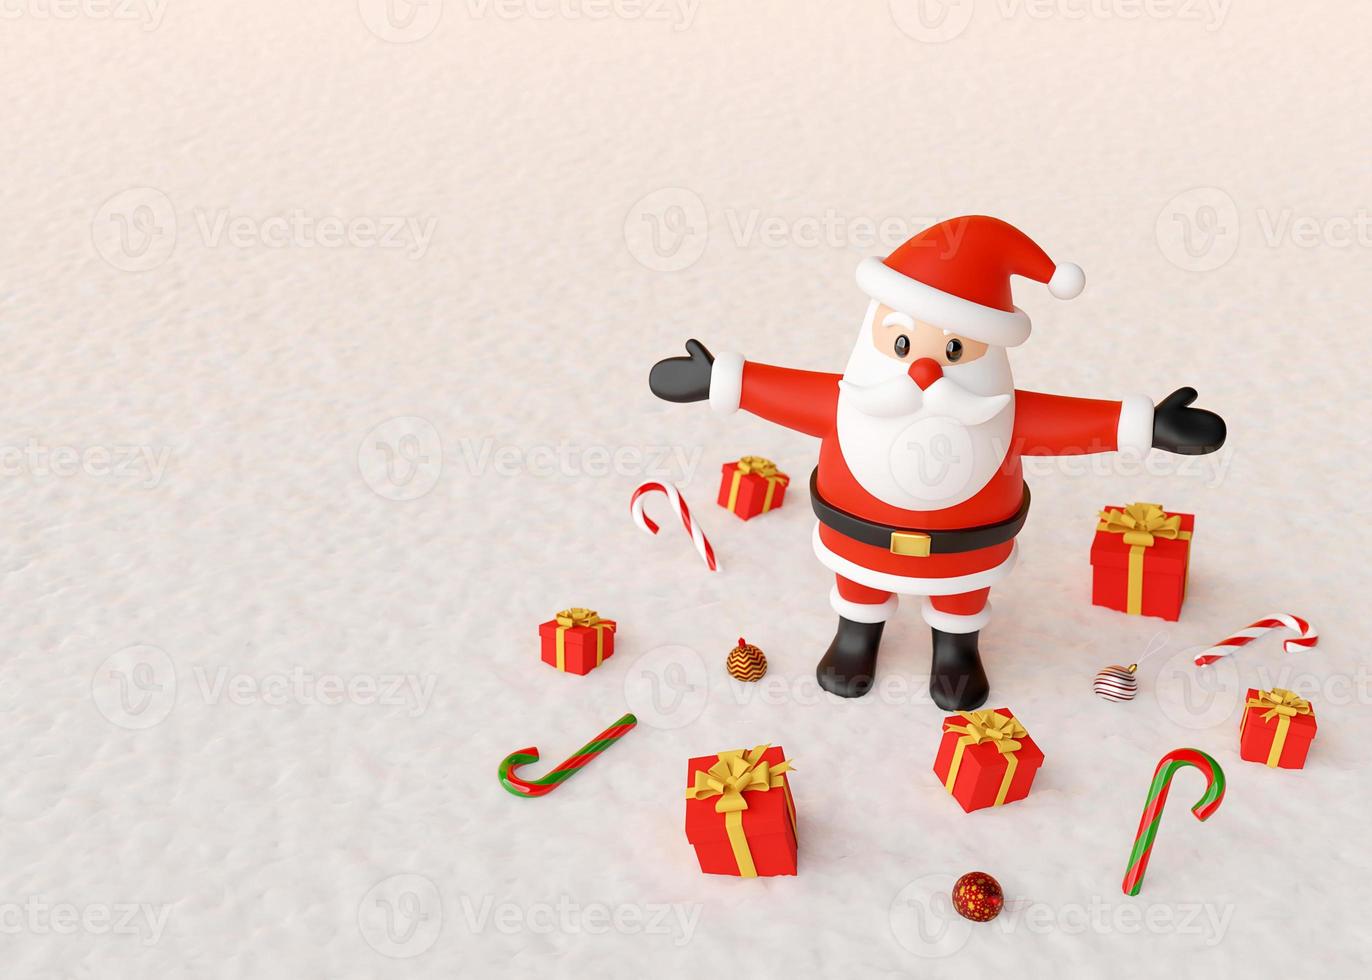 buon natale, babbo natale in piedi con regali e ornamenti natalizi su un terreno innevato, rendering 3d foto